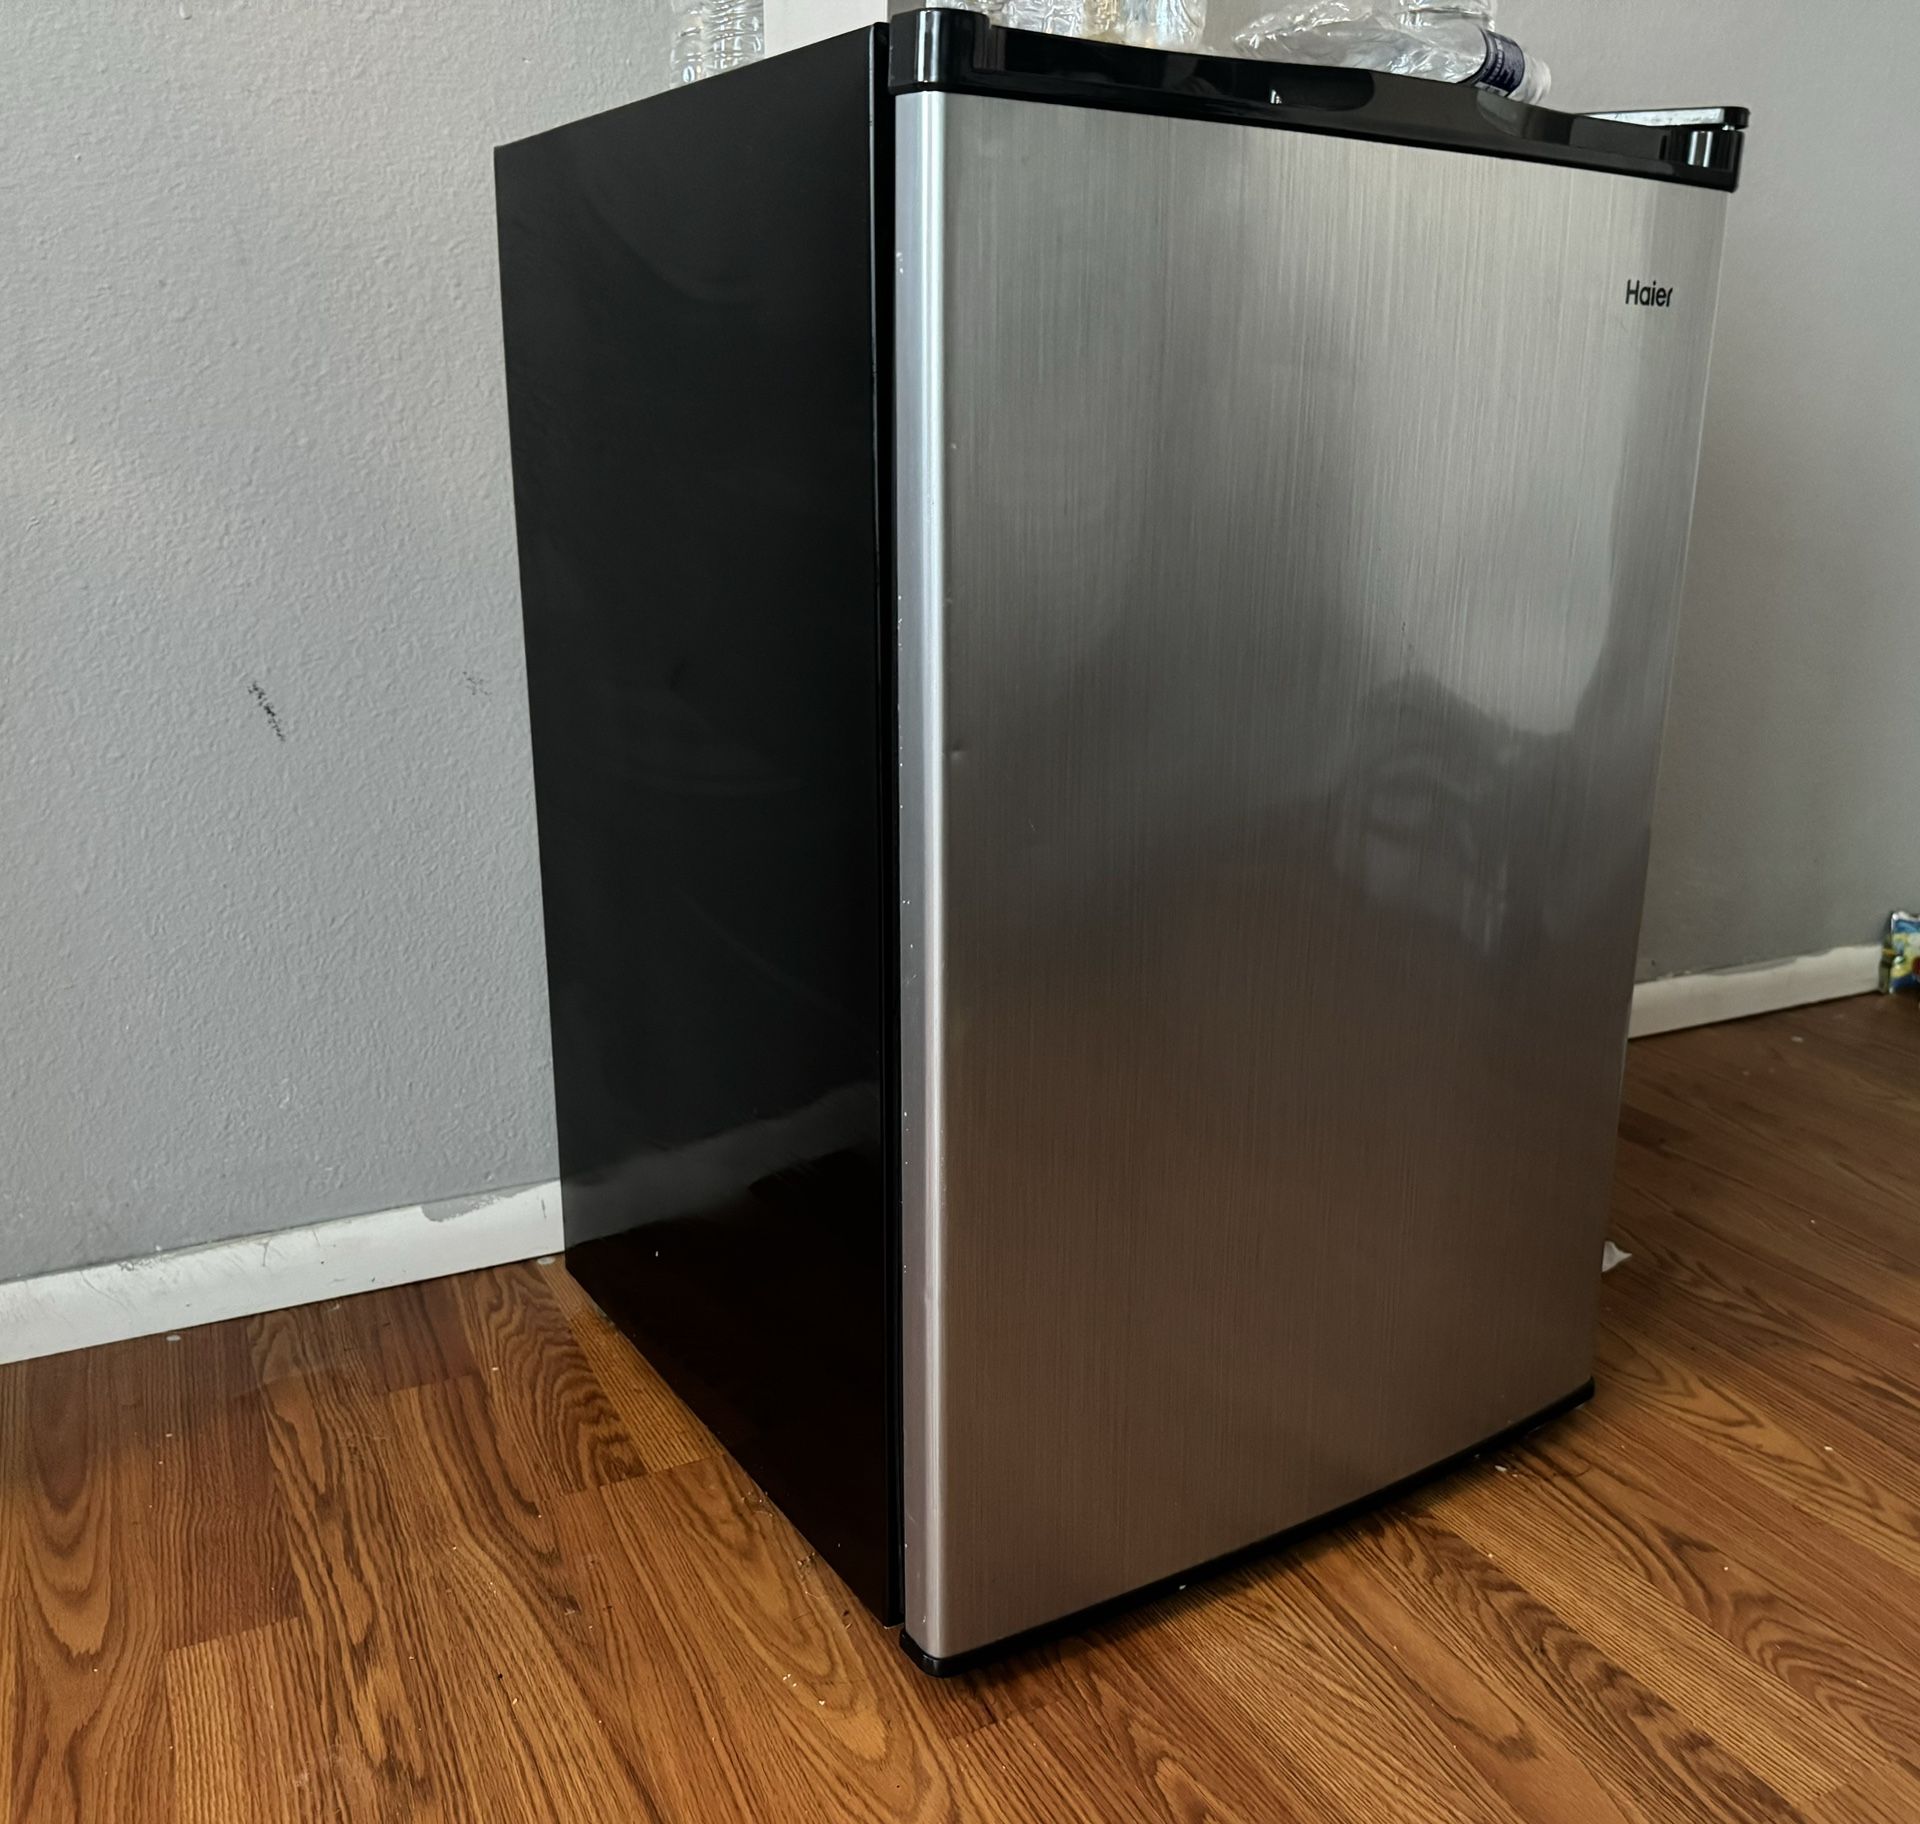 Haier Mini fridge